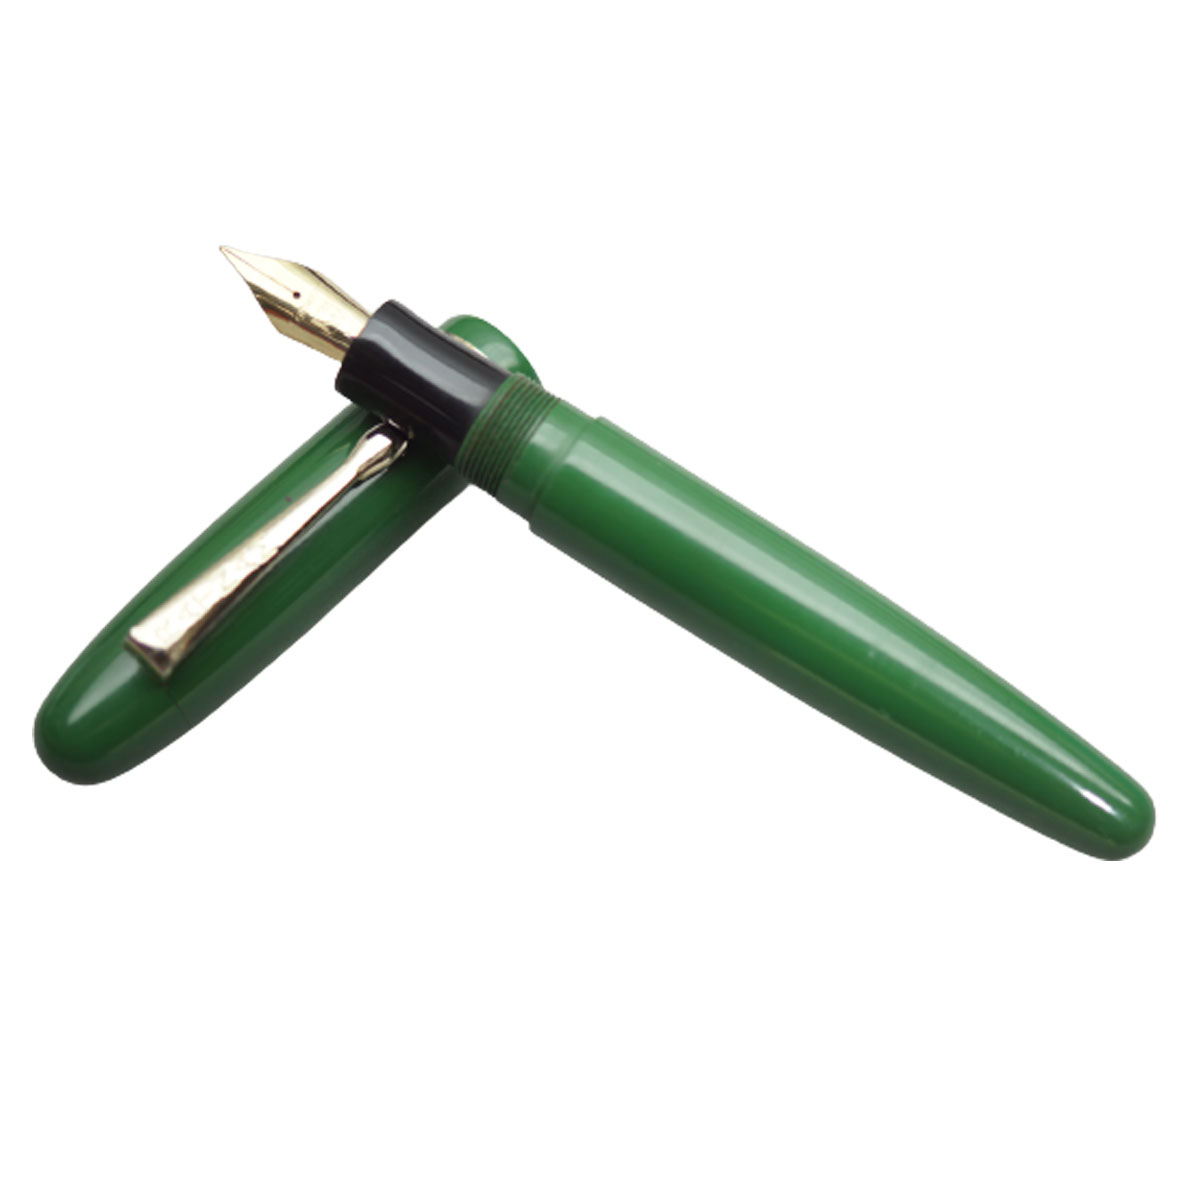 Ratnam  Torpedo Special Handmade Plain Green  Color Body  With Gold Trim Ebonite No.35 Kanwrite GP Medium Nib Handmade Eyedropper Fountain Pen SKU 20128